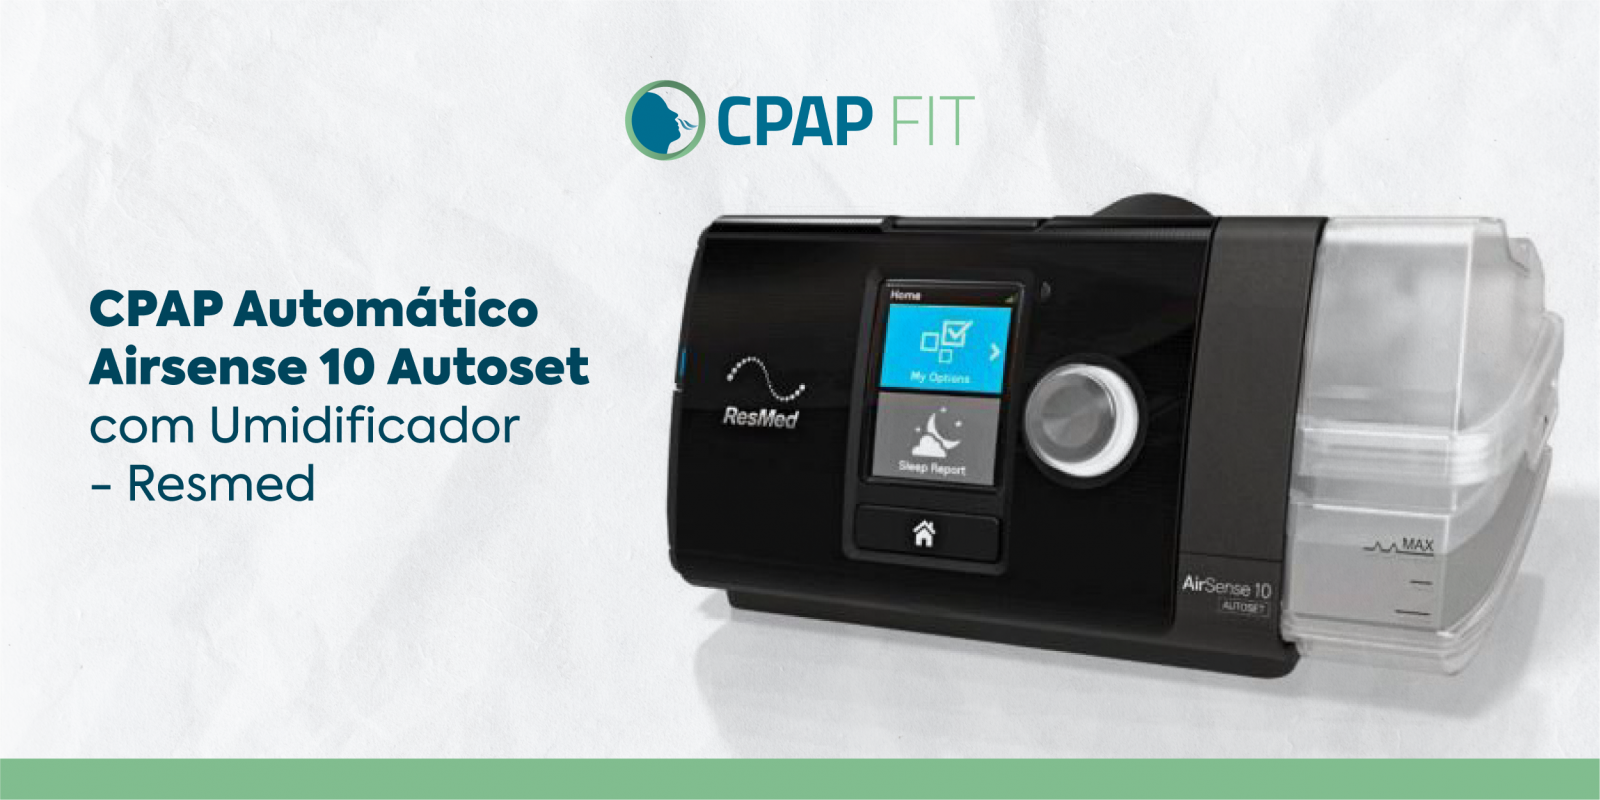 CPAP Automático Airsense 10 Autoset com Umidificador - ResMed